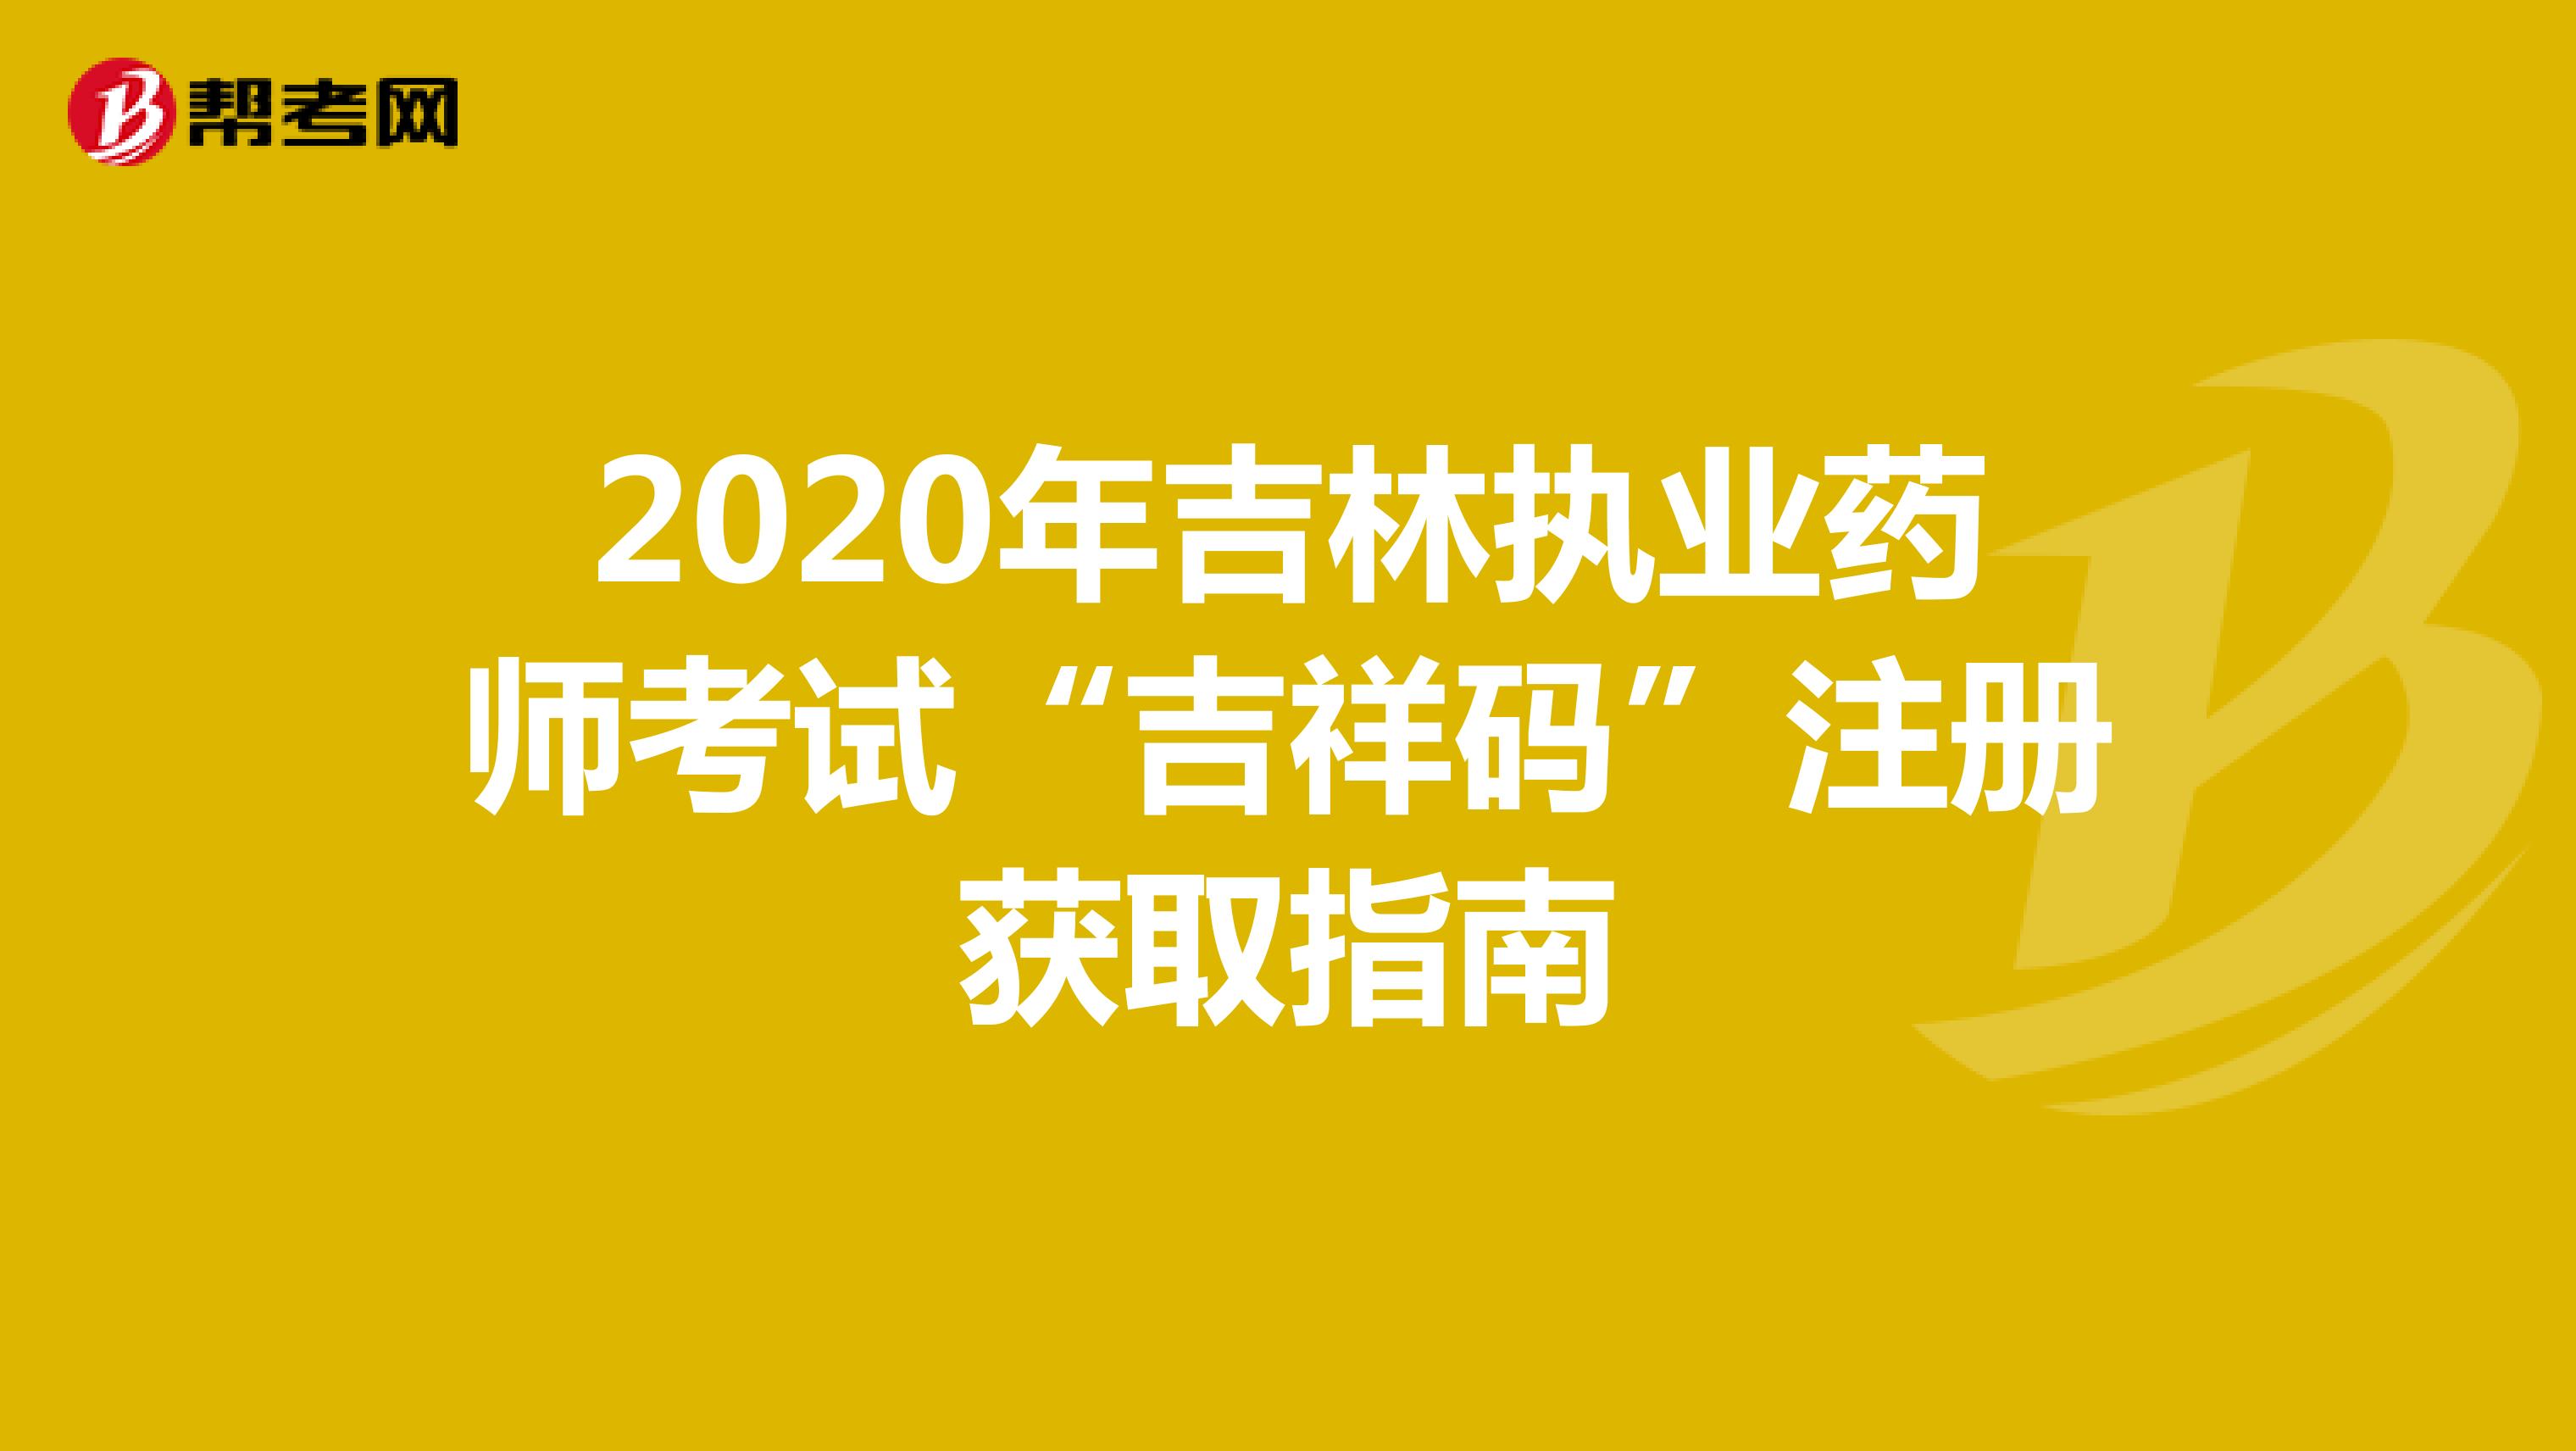 2020年吉林执业药师考试“吉祥码”注册获取指南